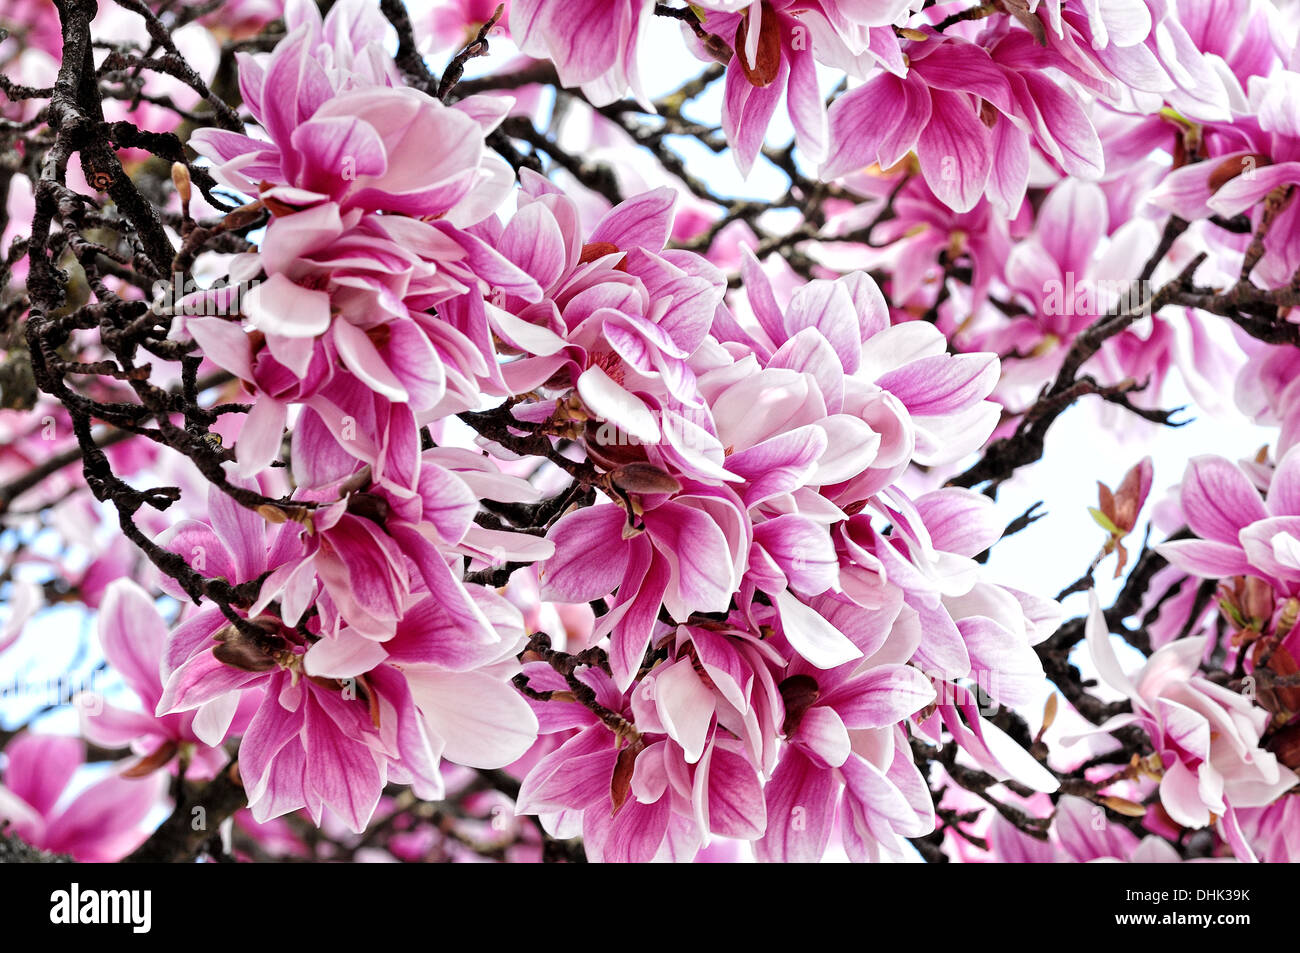 Flowers of magnolia Stock Photo